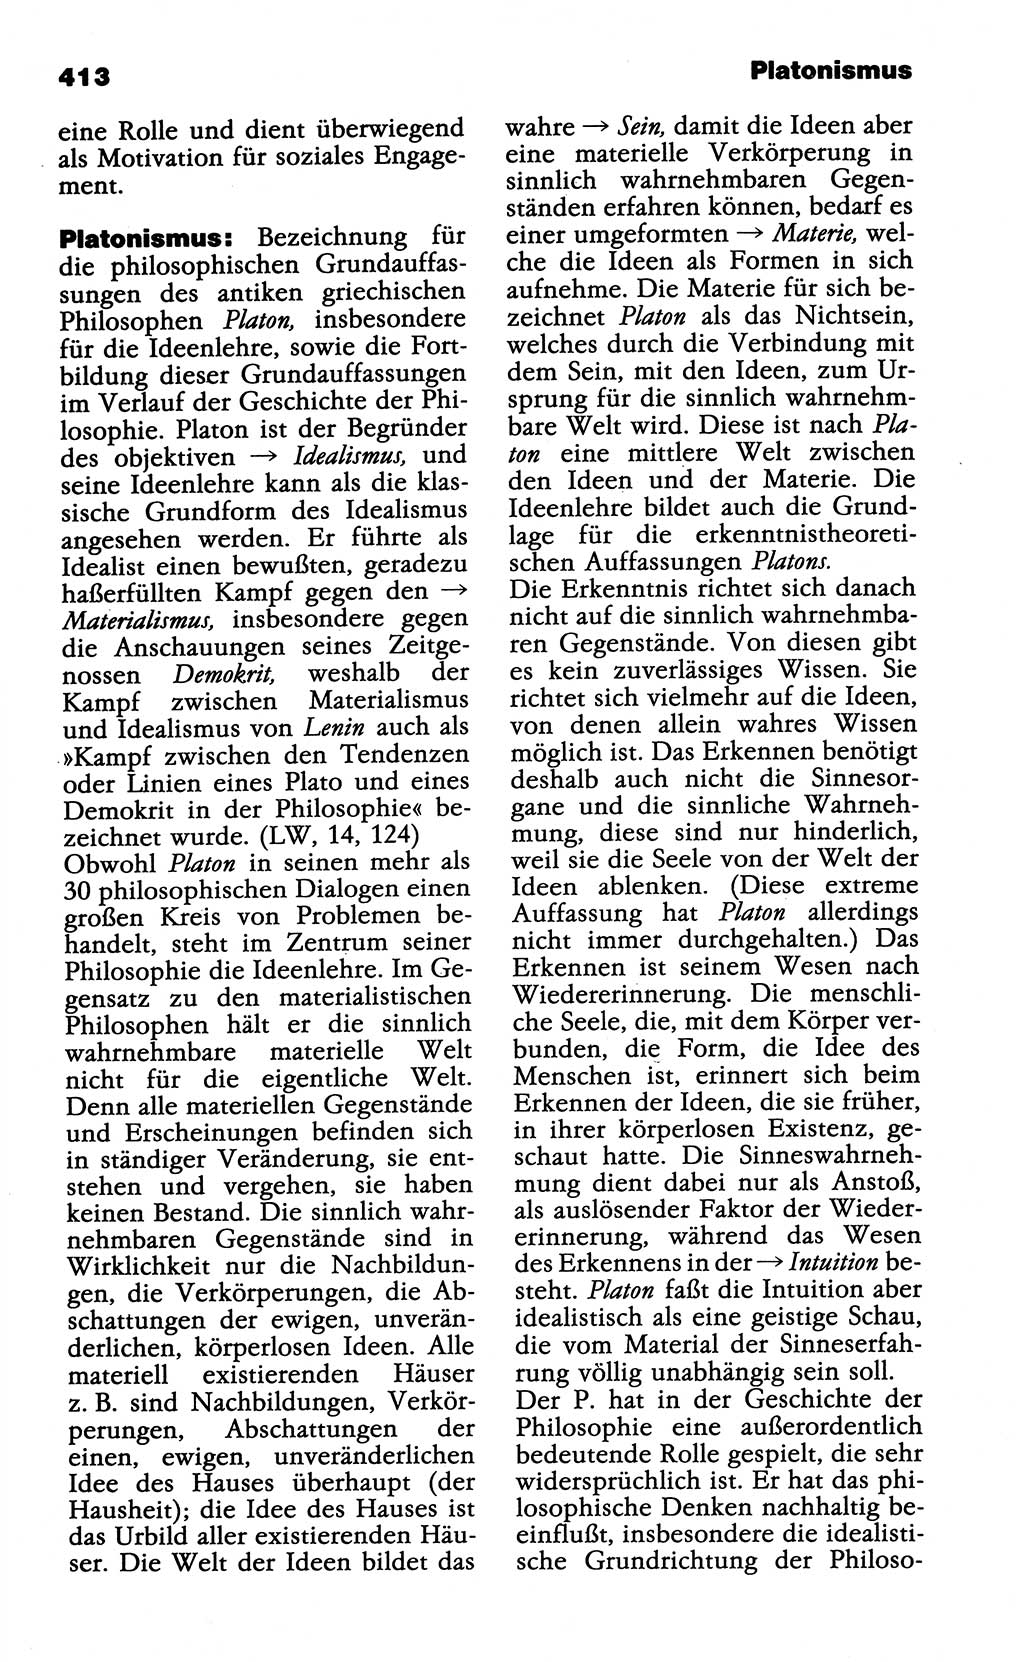 Wörterbuch der marxistisch-leninistischen Philosophie [Deutsche Demokratische Republik (DDR)] 1985, Seite 413 (Wb. ML Phil. DDR 1985, S. 413)